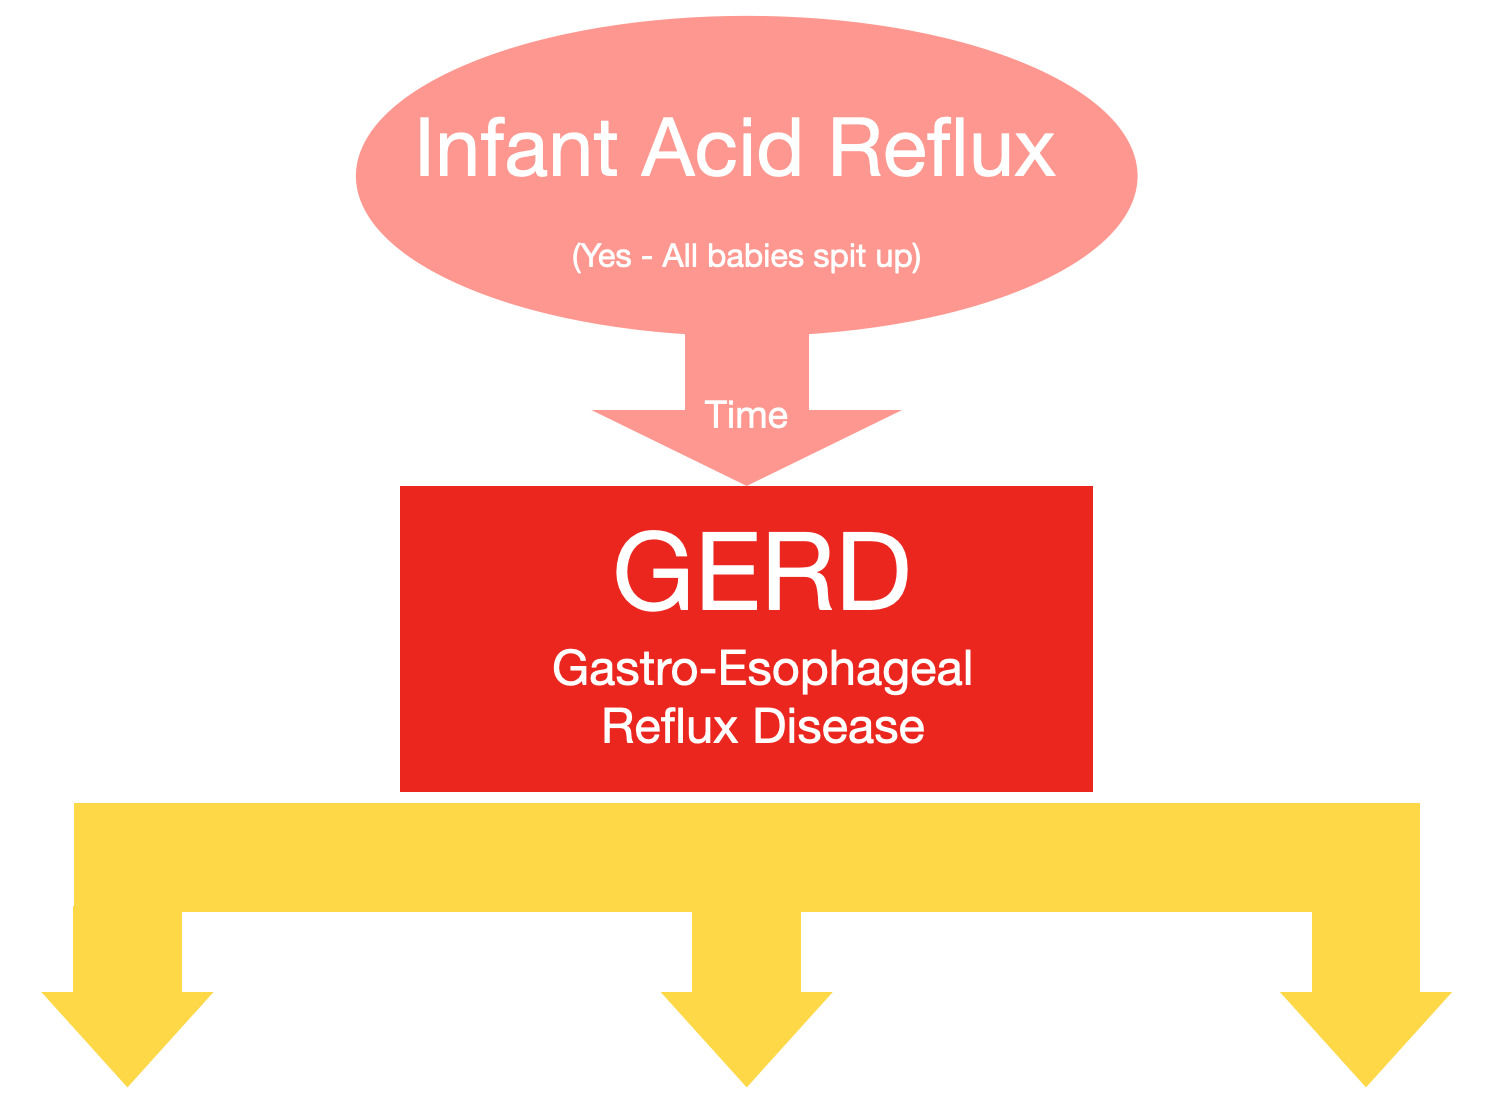 What is acid reflux disease